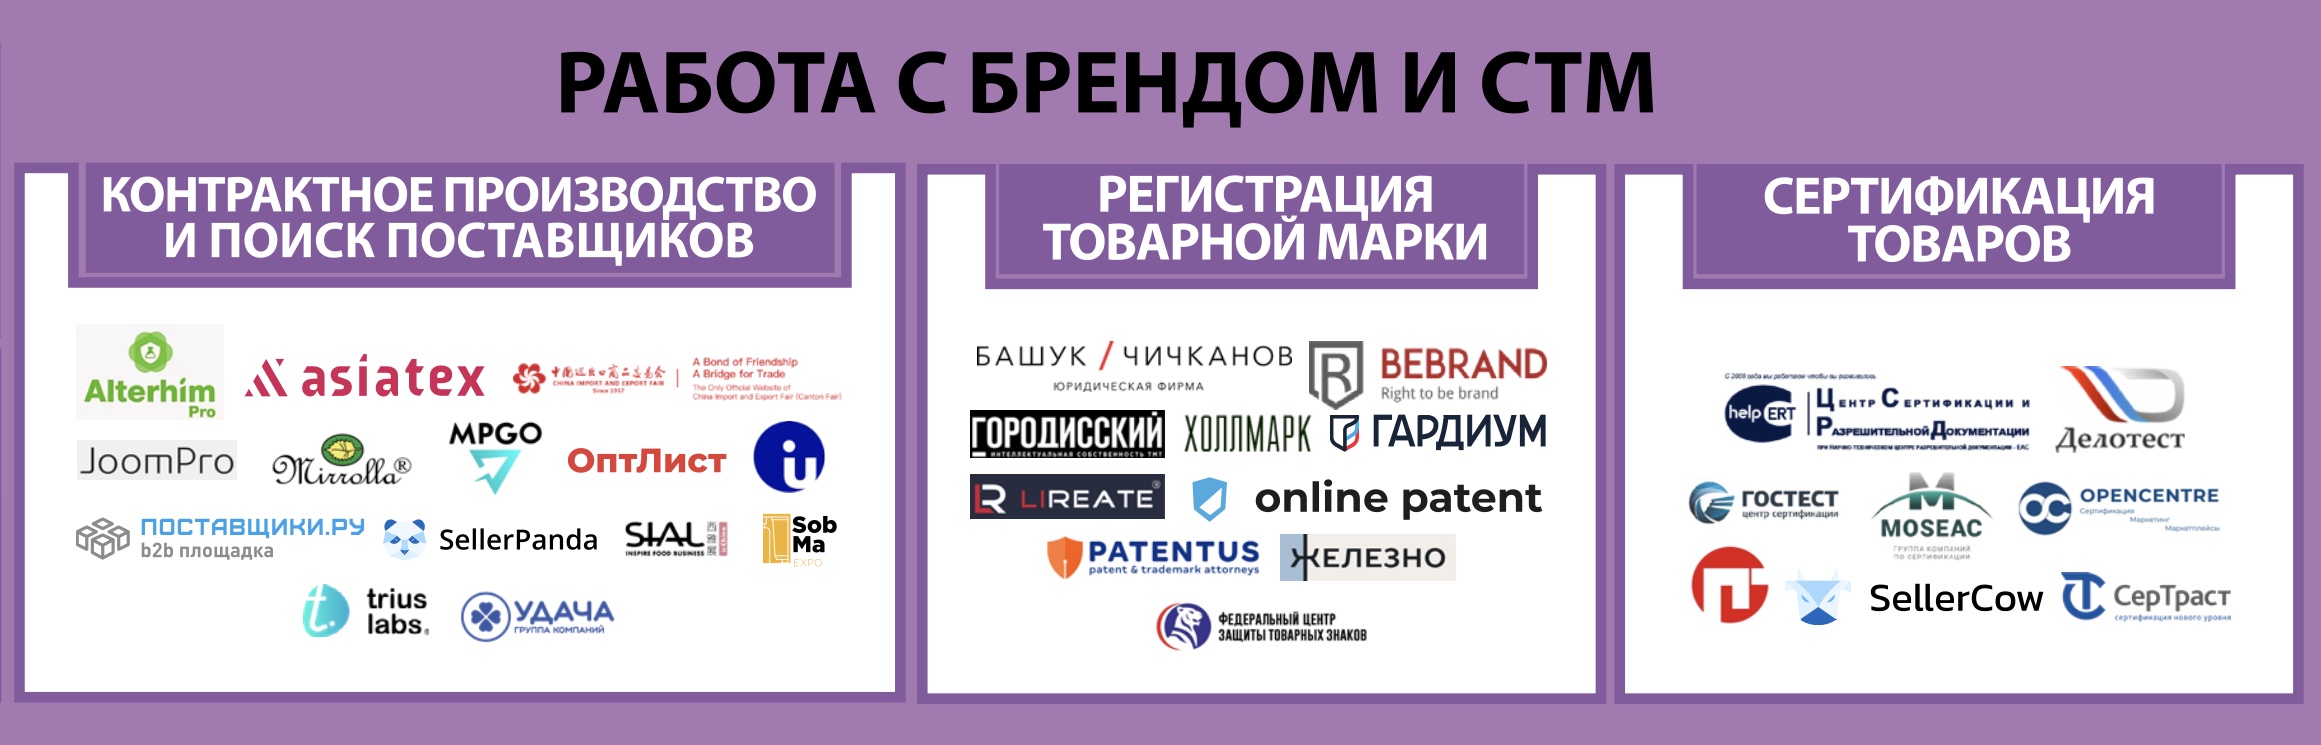 Собственные торговые марки. Экосистема электронной торговли в России